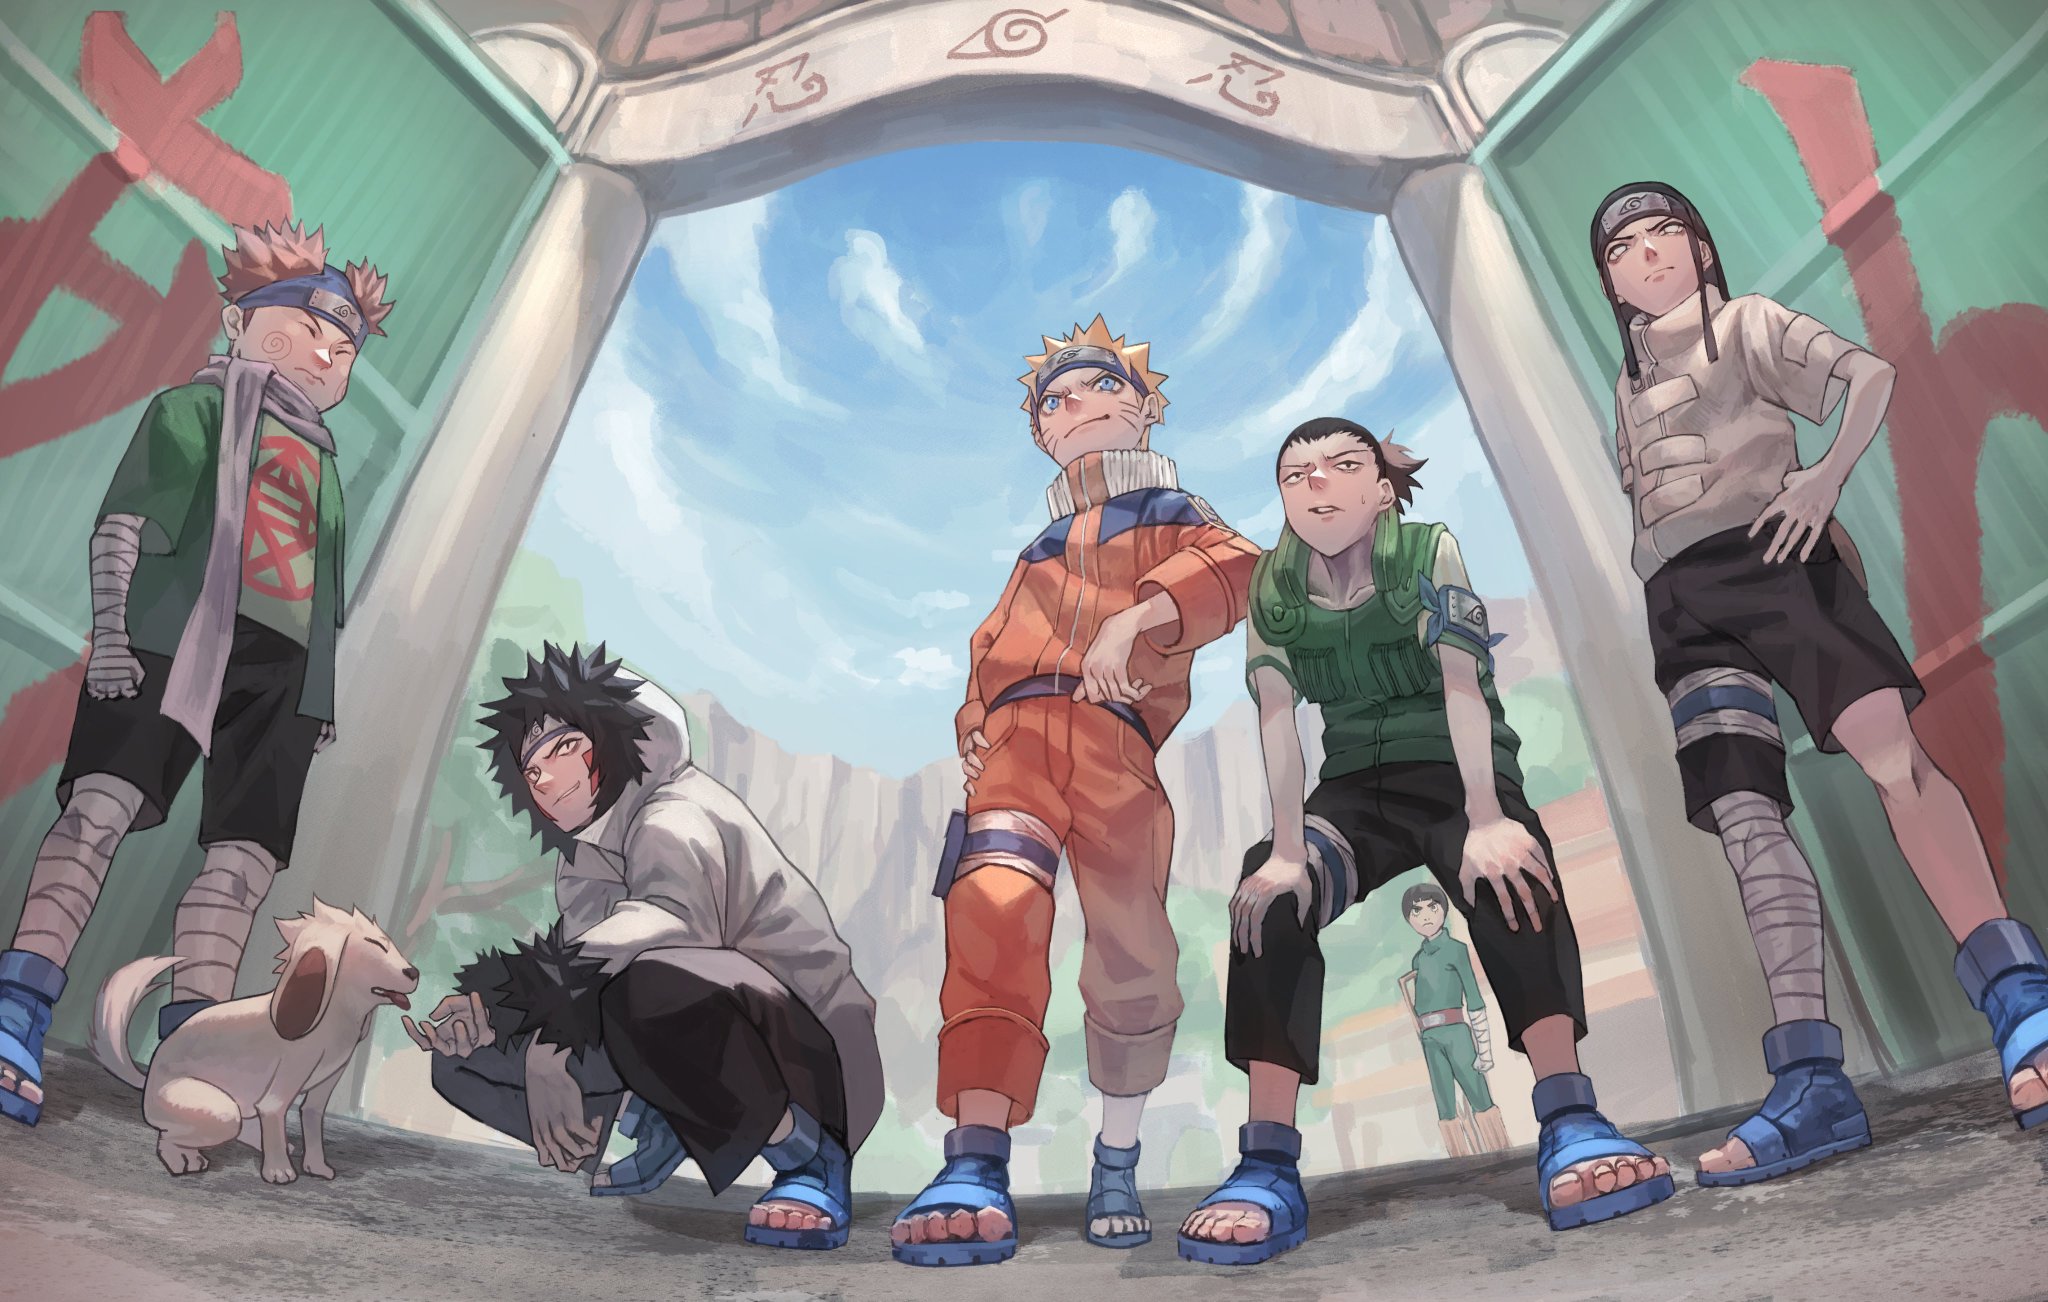 Descarga gratuita de fondo de pantalla para móvil de Naruto, Animado, Naruto Uzumaki, Roca Lee, Shikamaru Nara, Chōji Akimichi, Kiba Inuzuka, Neji Hyūga.